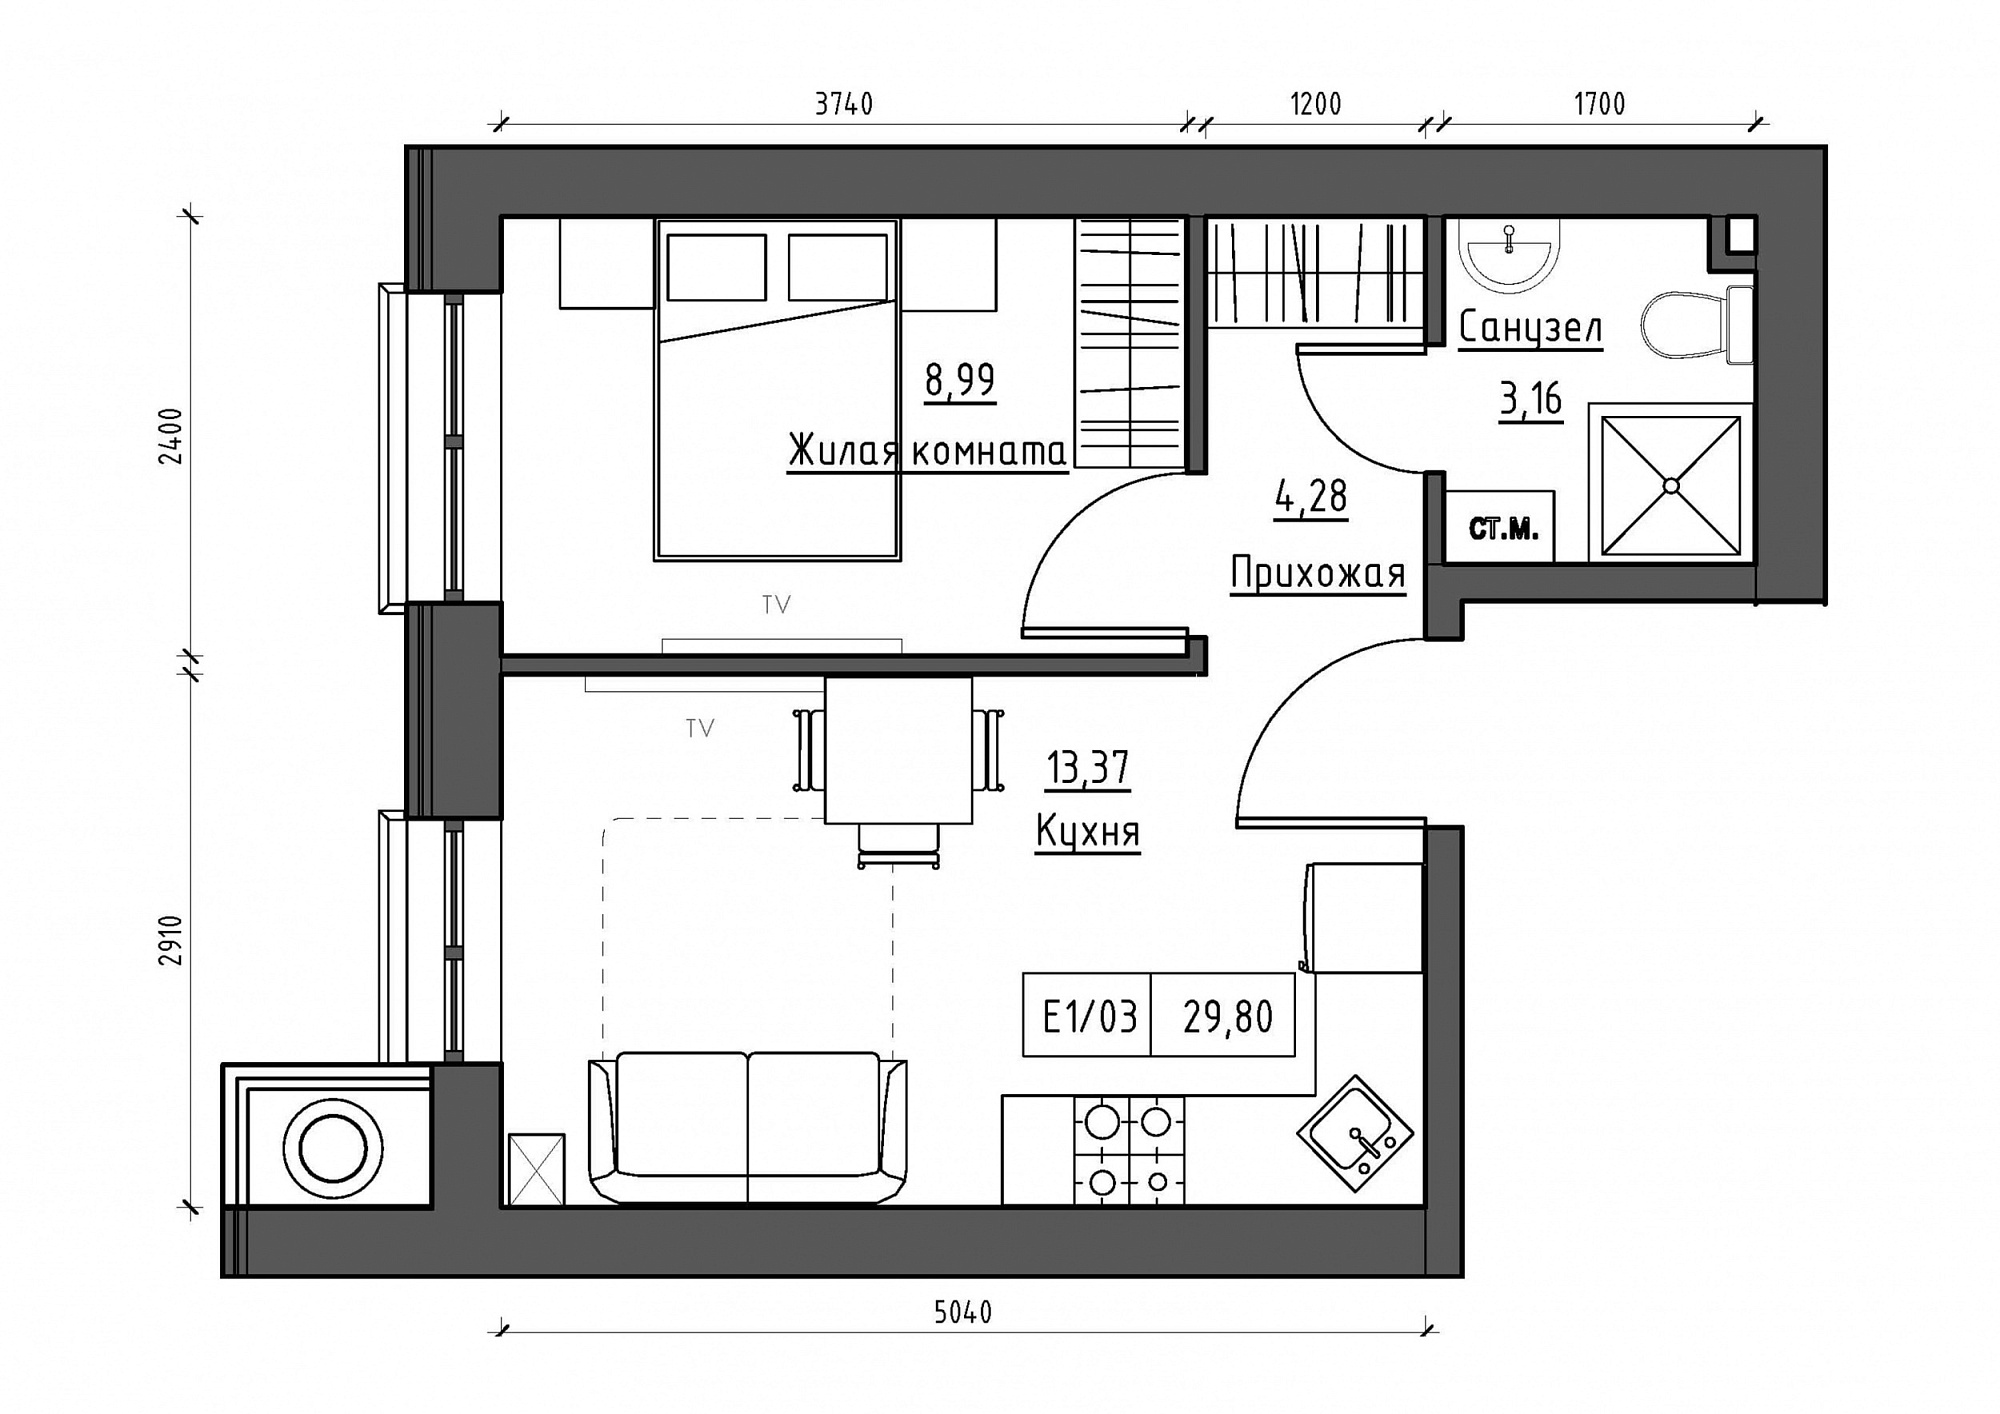 Планування 1-к квартира площею 29.8м2, KS-011-01/0003.